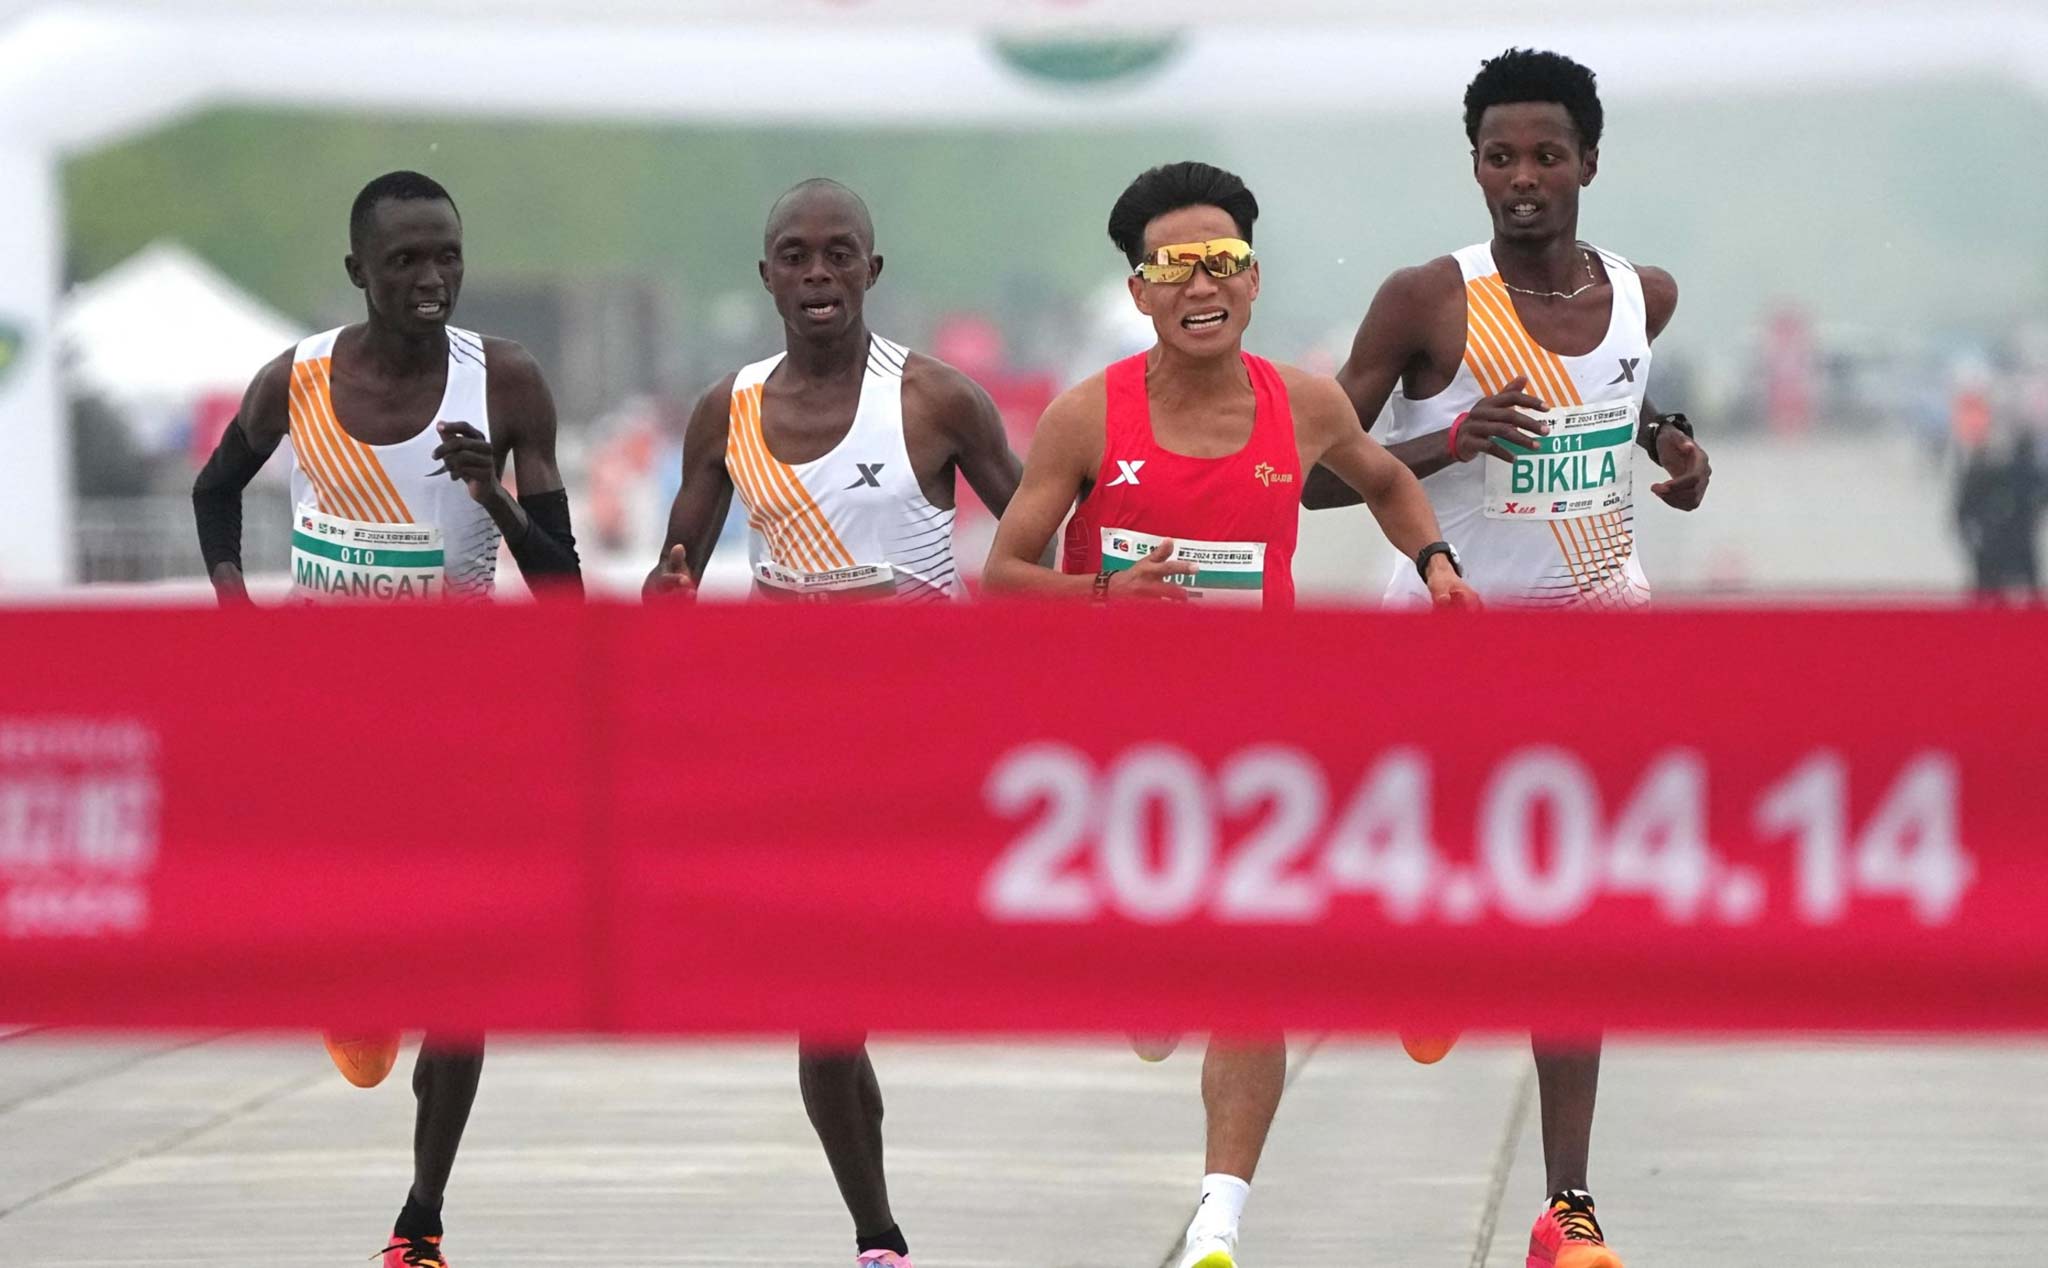 Giải chạy bị điều tra vì 3 vận động viên châu Phi nhường chiến thắng cho vđv Trung Quốc